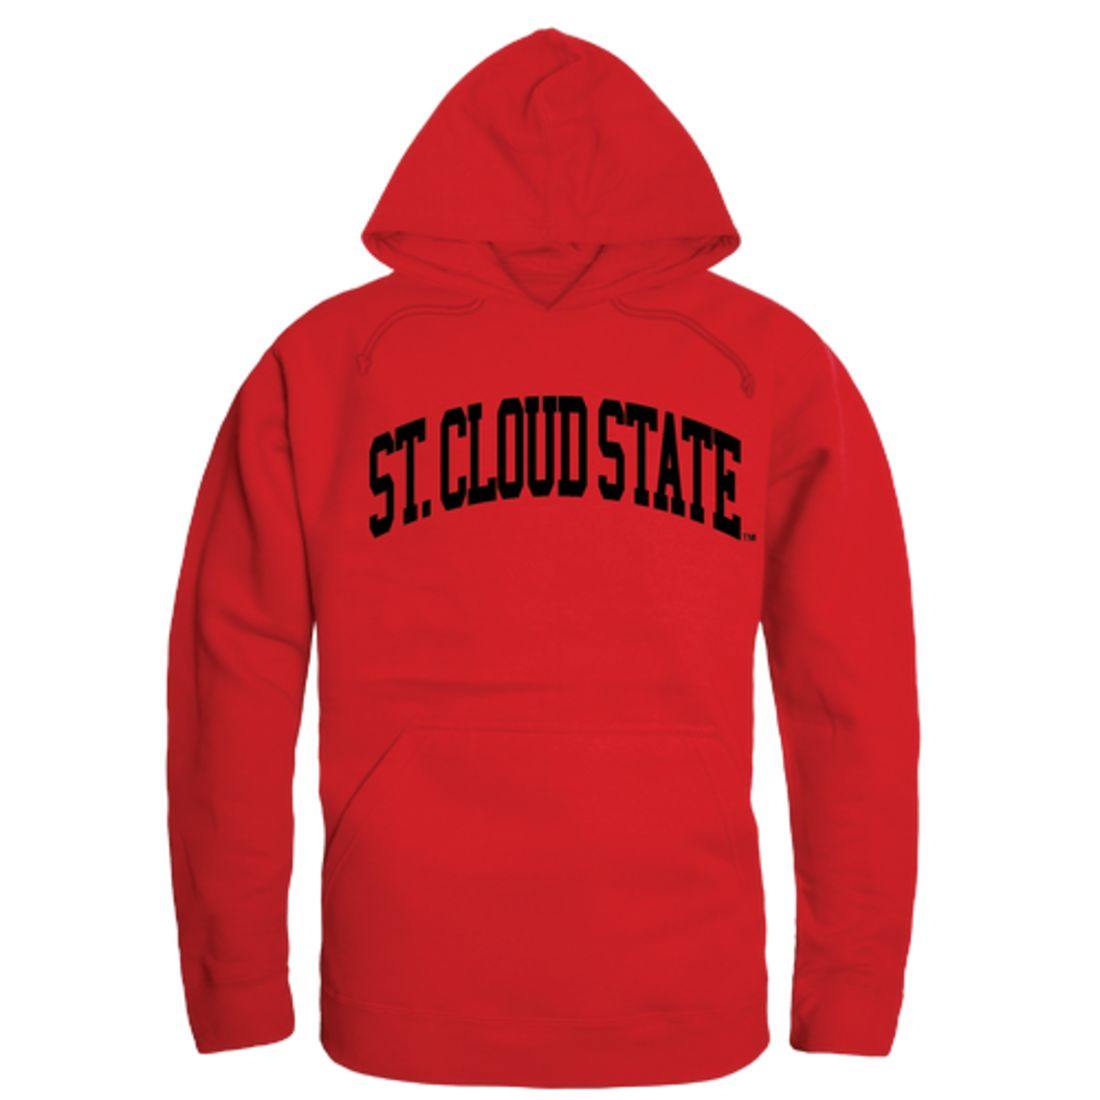 St. Cloud State University Huskies College Hoodie Sweatshirt Red-Campus-Wardrobe